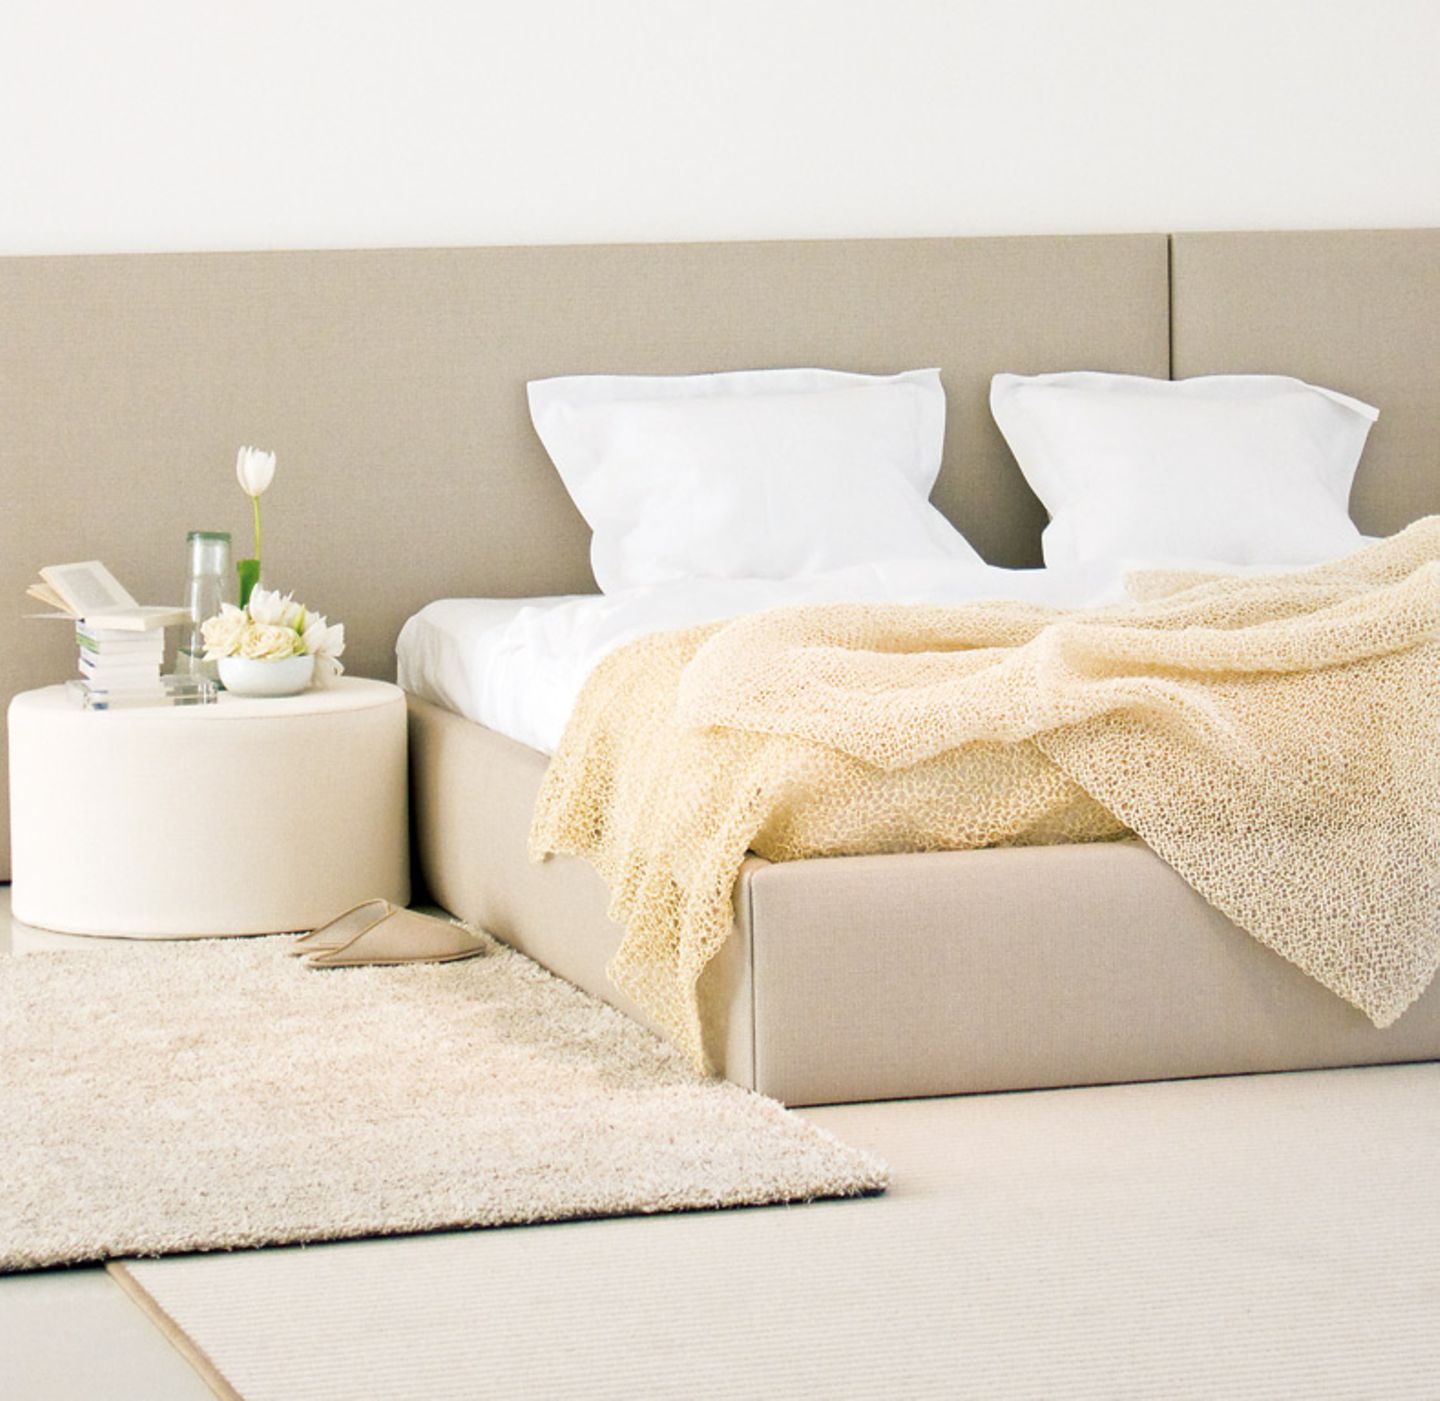 Feines aus Finnland: Bett "Bed Concept" von Woodnotes